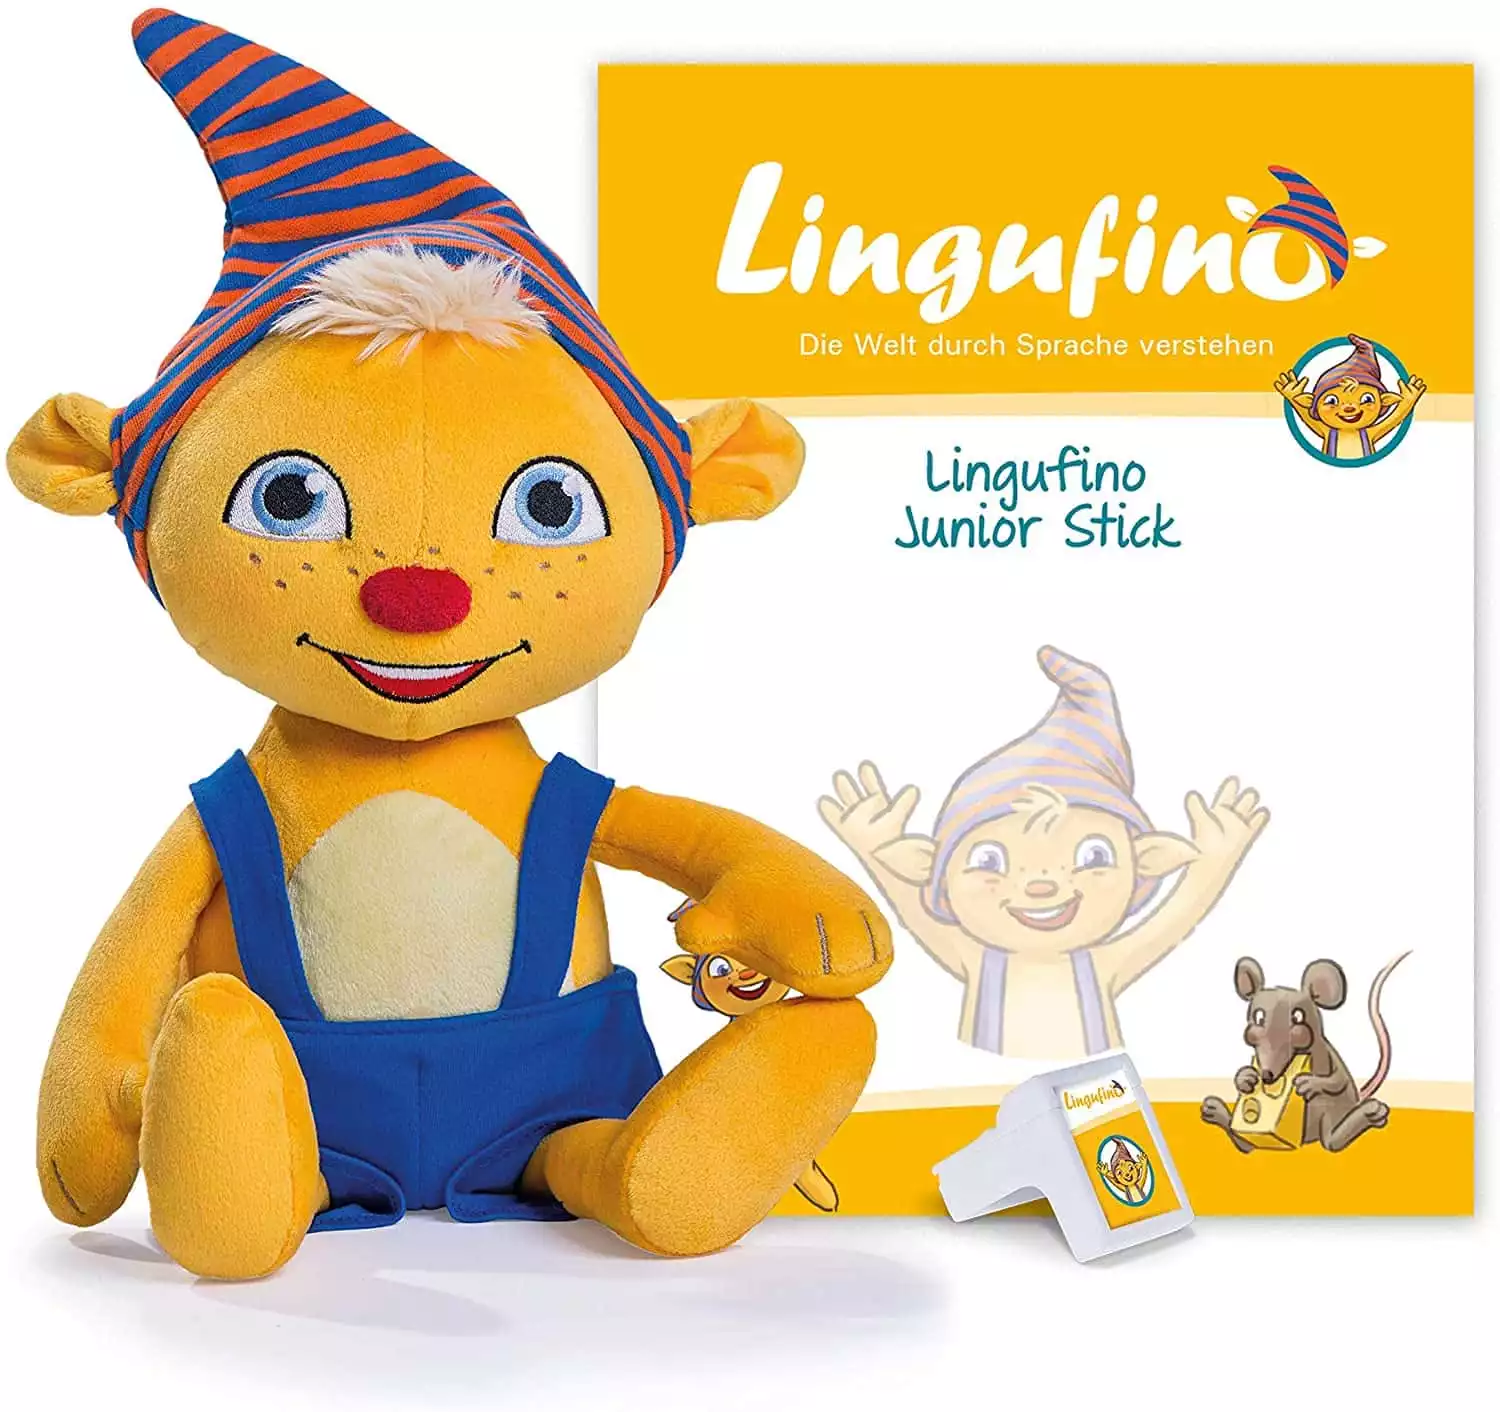 Dialog Toys Lingufino expansion kit